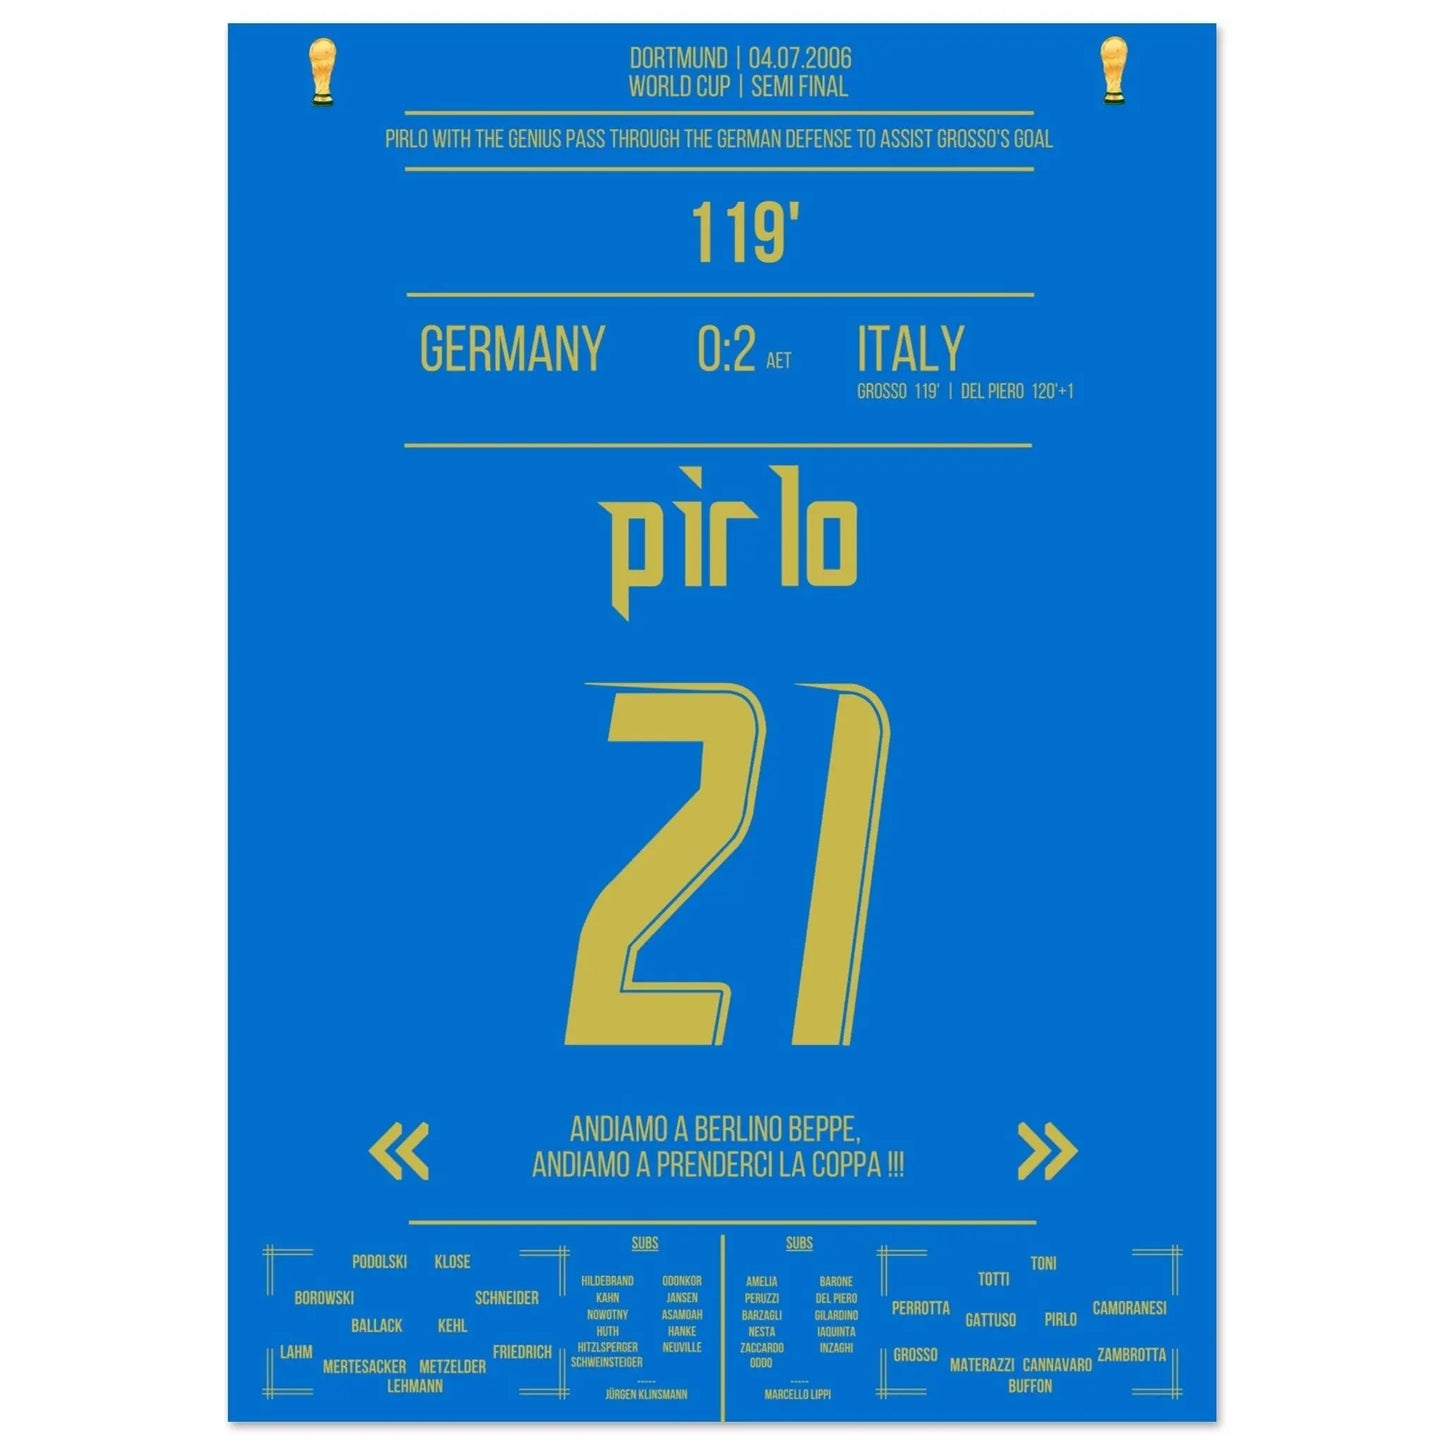 La passe de rêve de Pirlo traverse la défense allemande pour porter le score à 1-0 grâce à Grosso